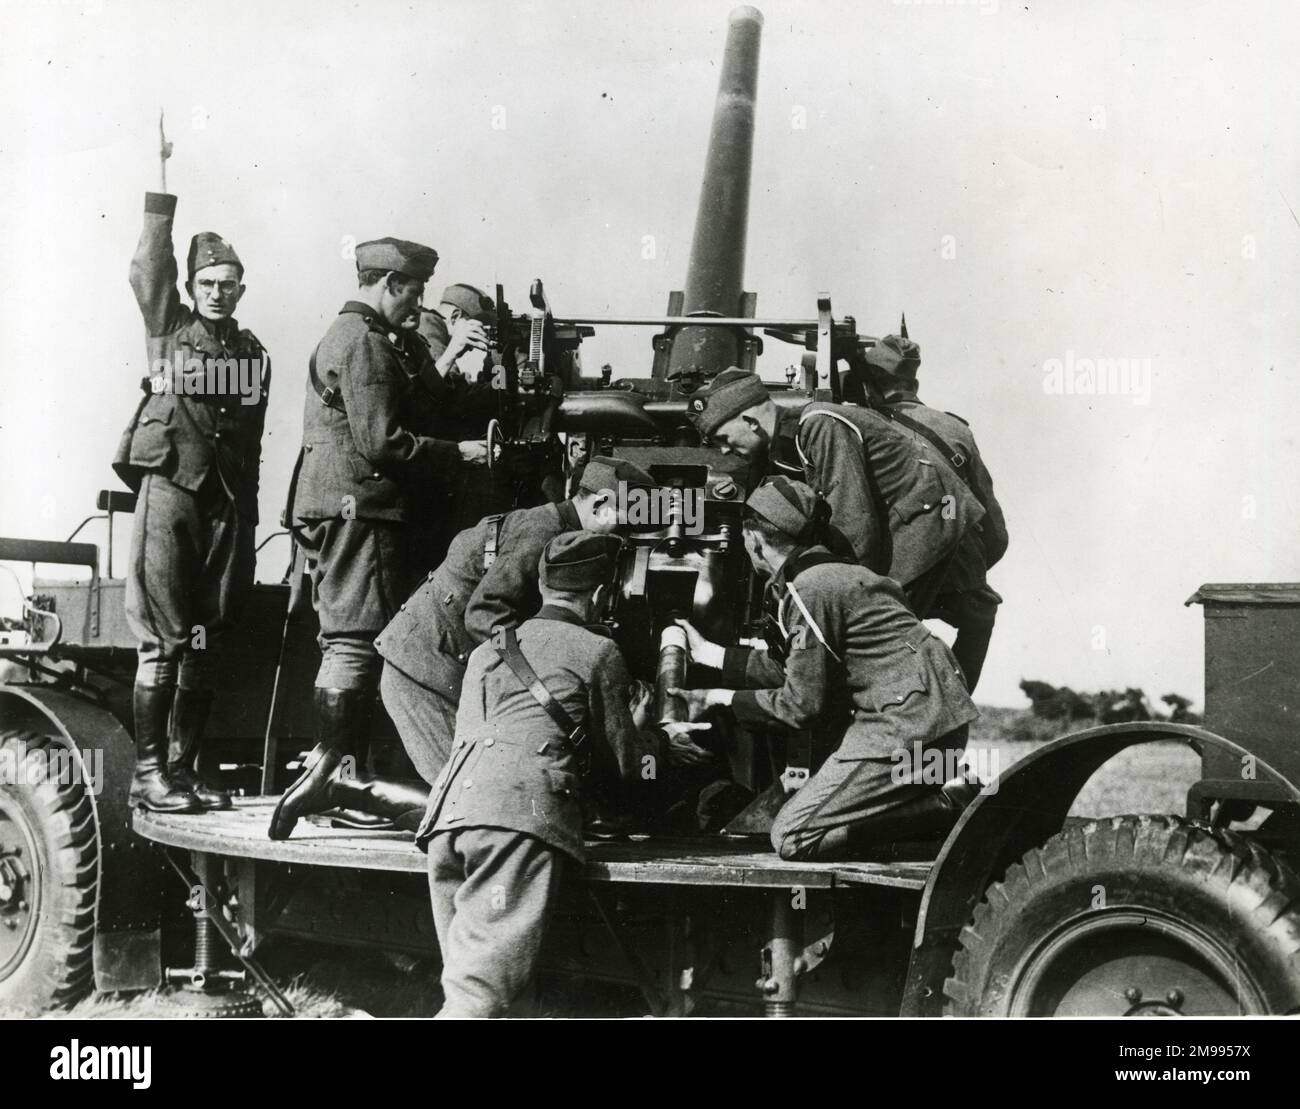 La pratique anti-aérienne, Eire se prépare à l'invasion - hommes de l'armée irlandaise en formation, 26 juin 1940. Banque D'Images